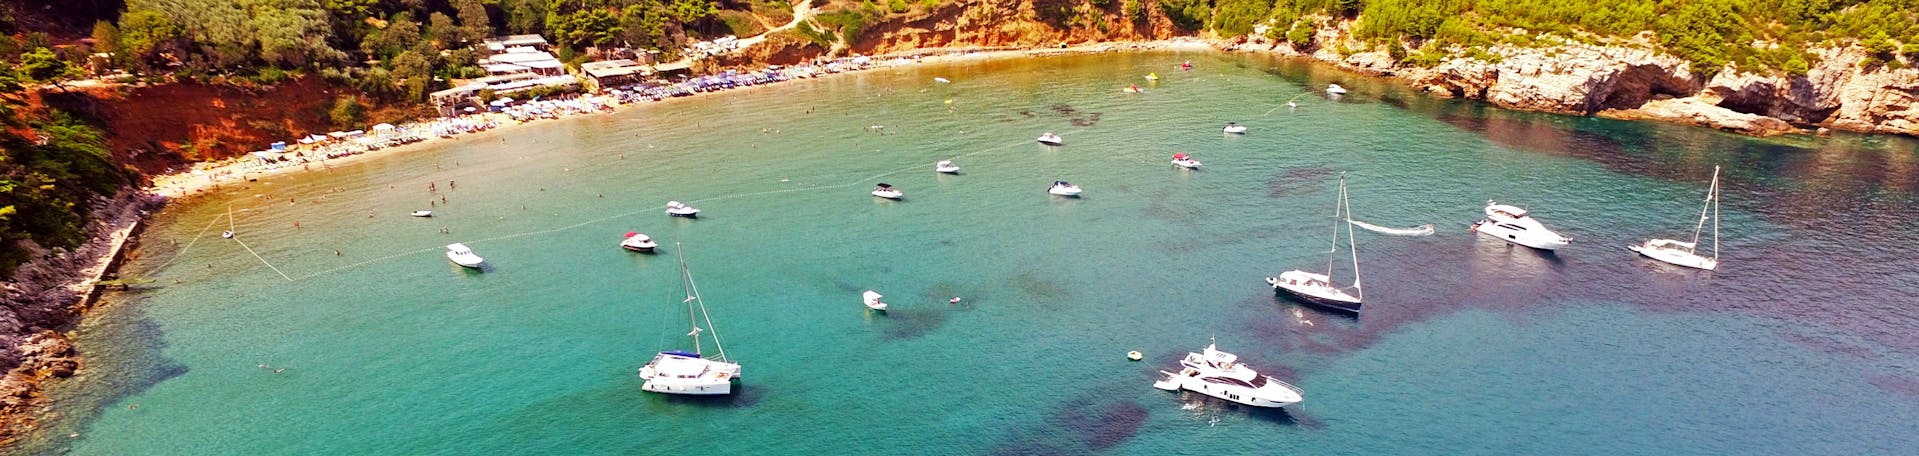 Uitzicht over de baai tijdens de privé boottocht van een hele dag van Dubrovnik naar de Elaphiti Eilanden georganiseerd door Snooky Tours Dubrovnik.